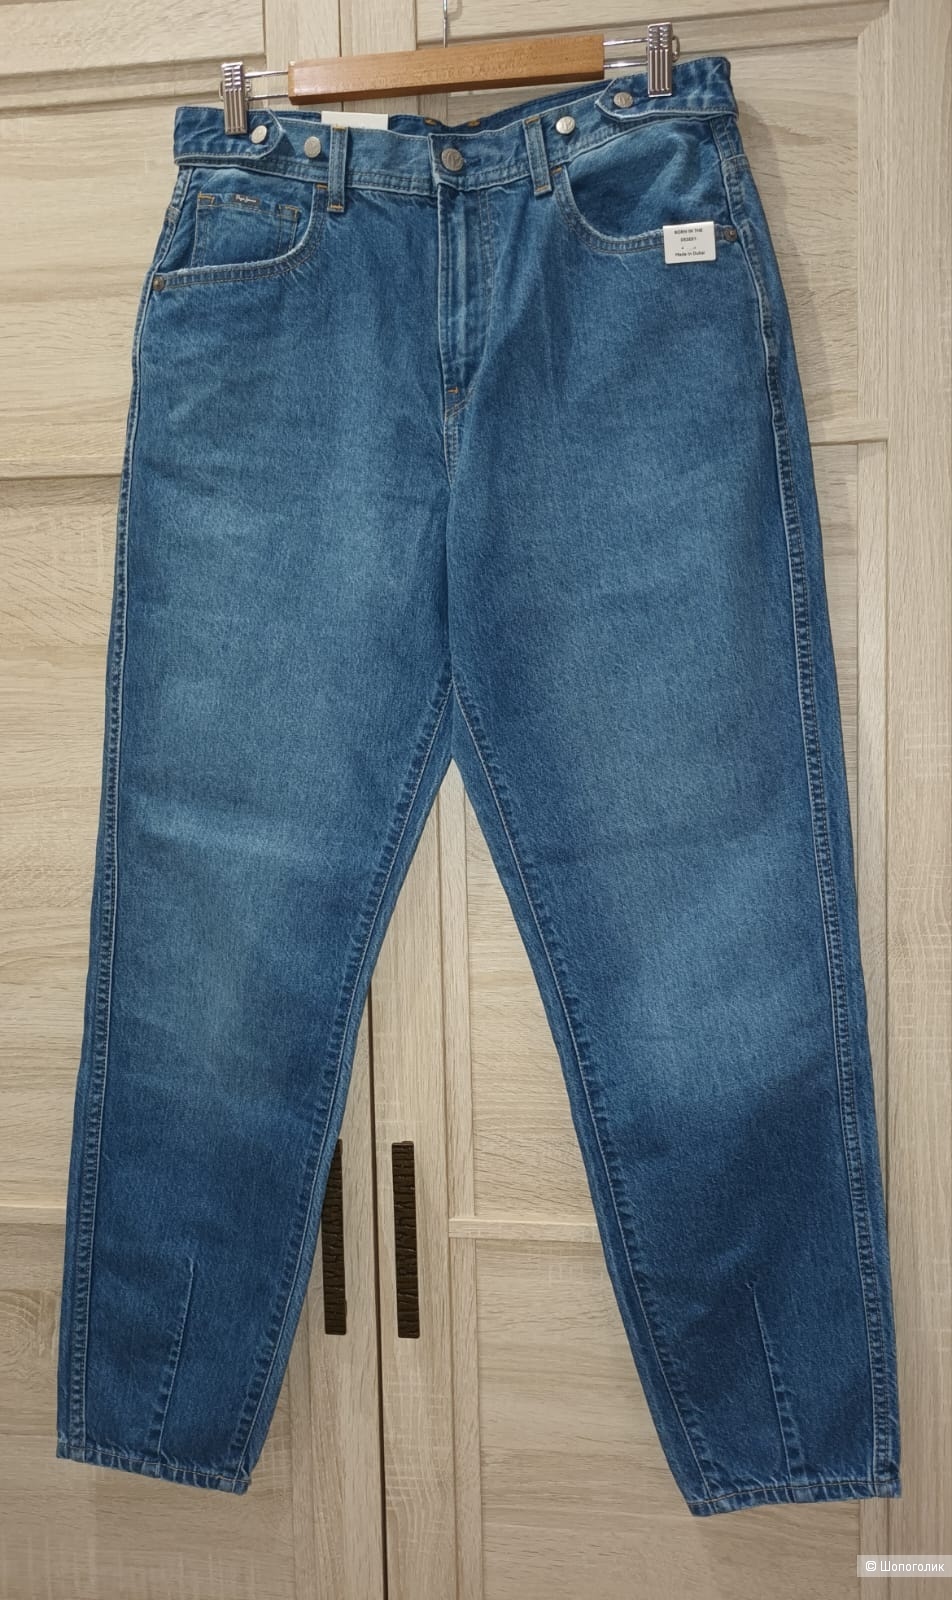 Джинсы Pepe Jeans/46